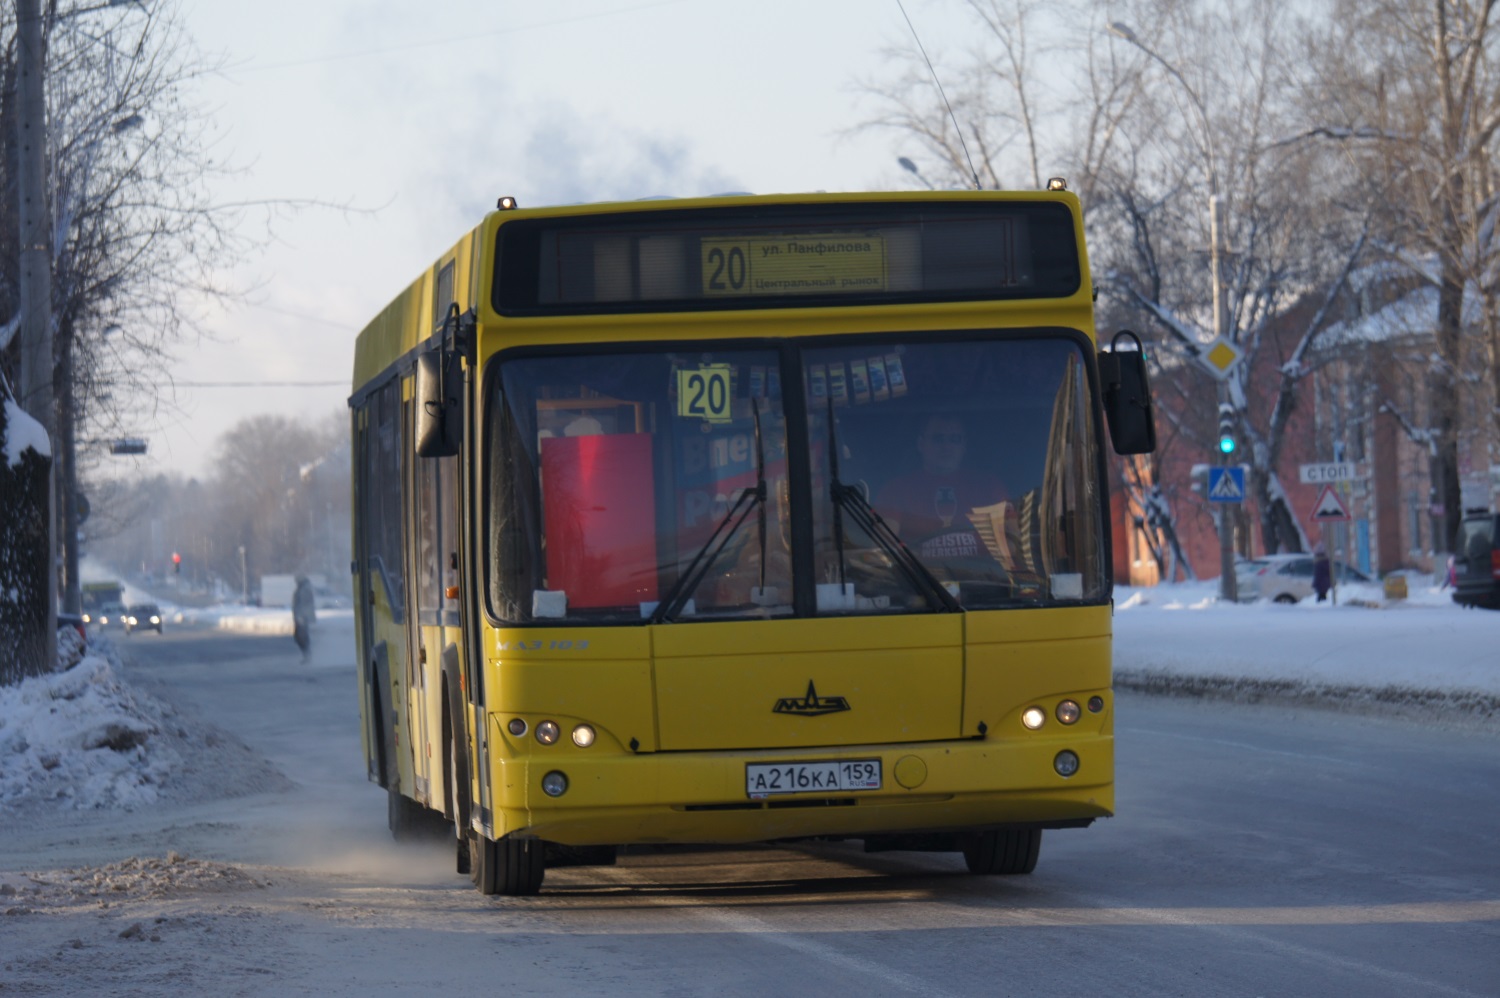 Договоры на обслуживание автобусных маршрутов №20 и №64 будут расторгнуты 30 декабря